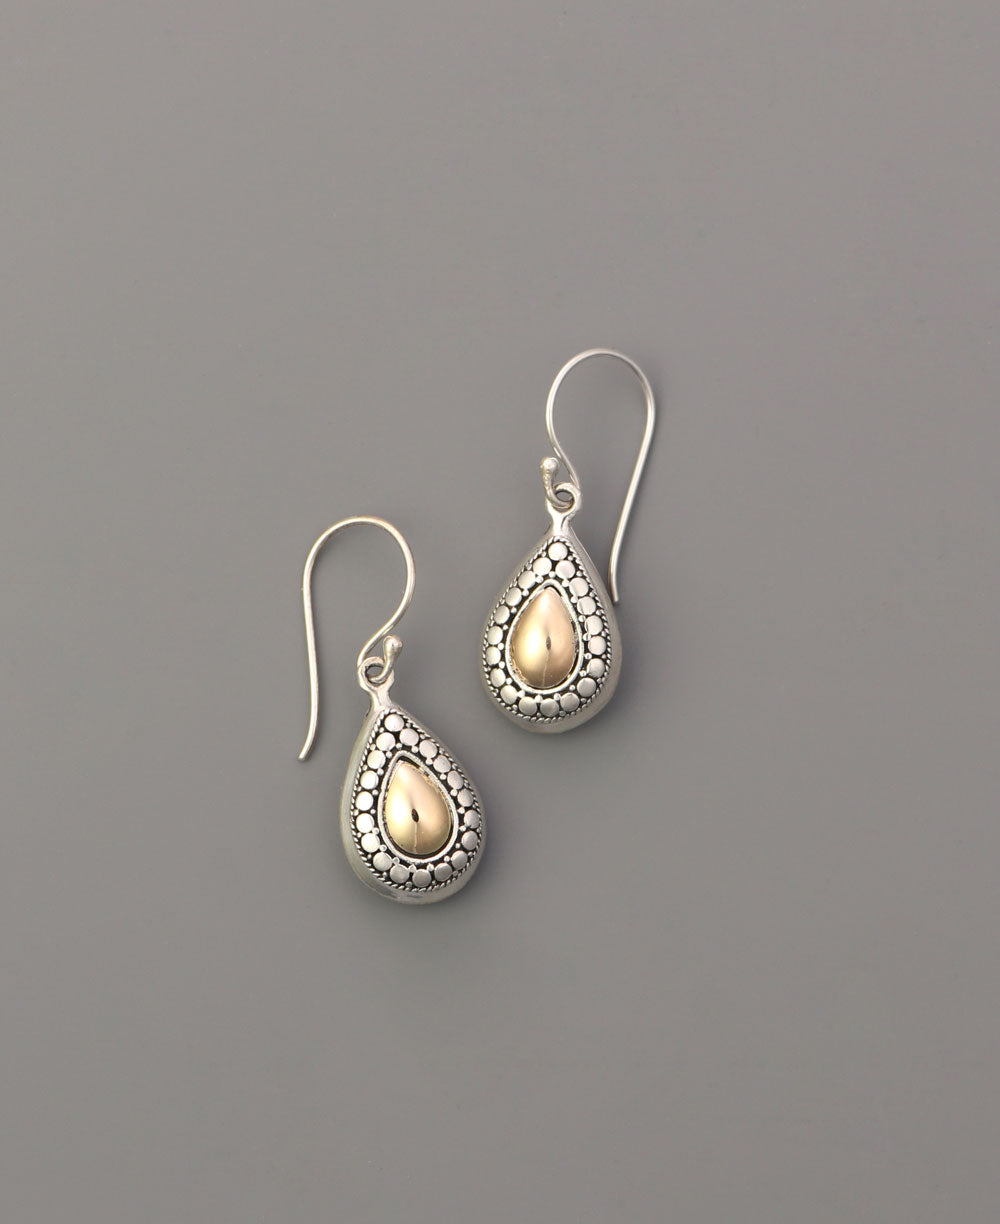 Bohemian teardrop sterling silver earrings